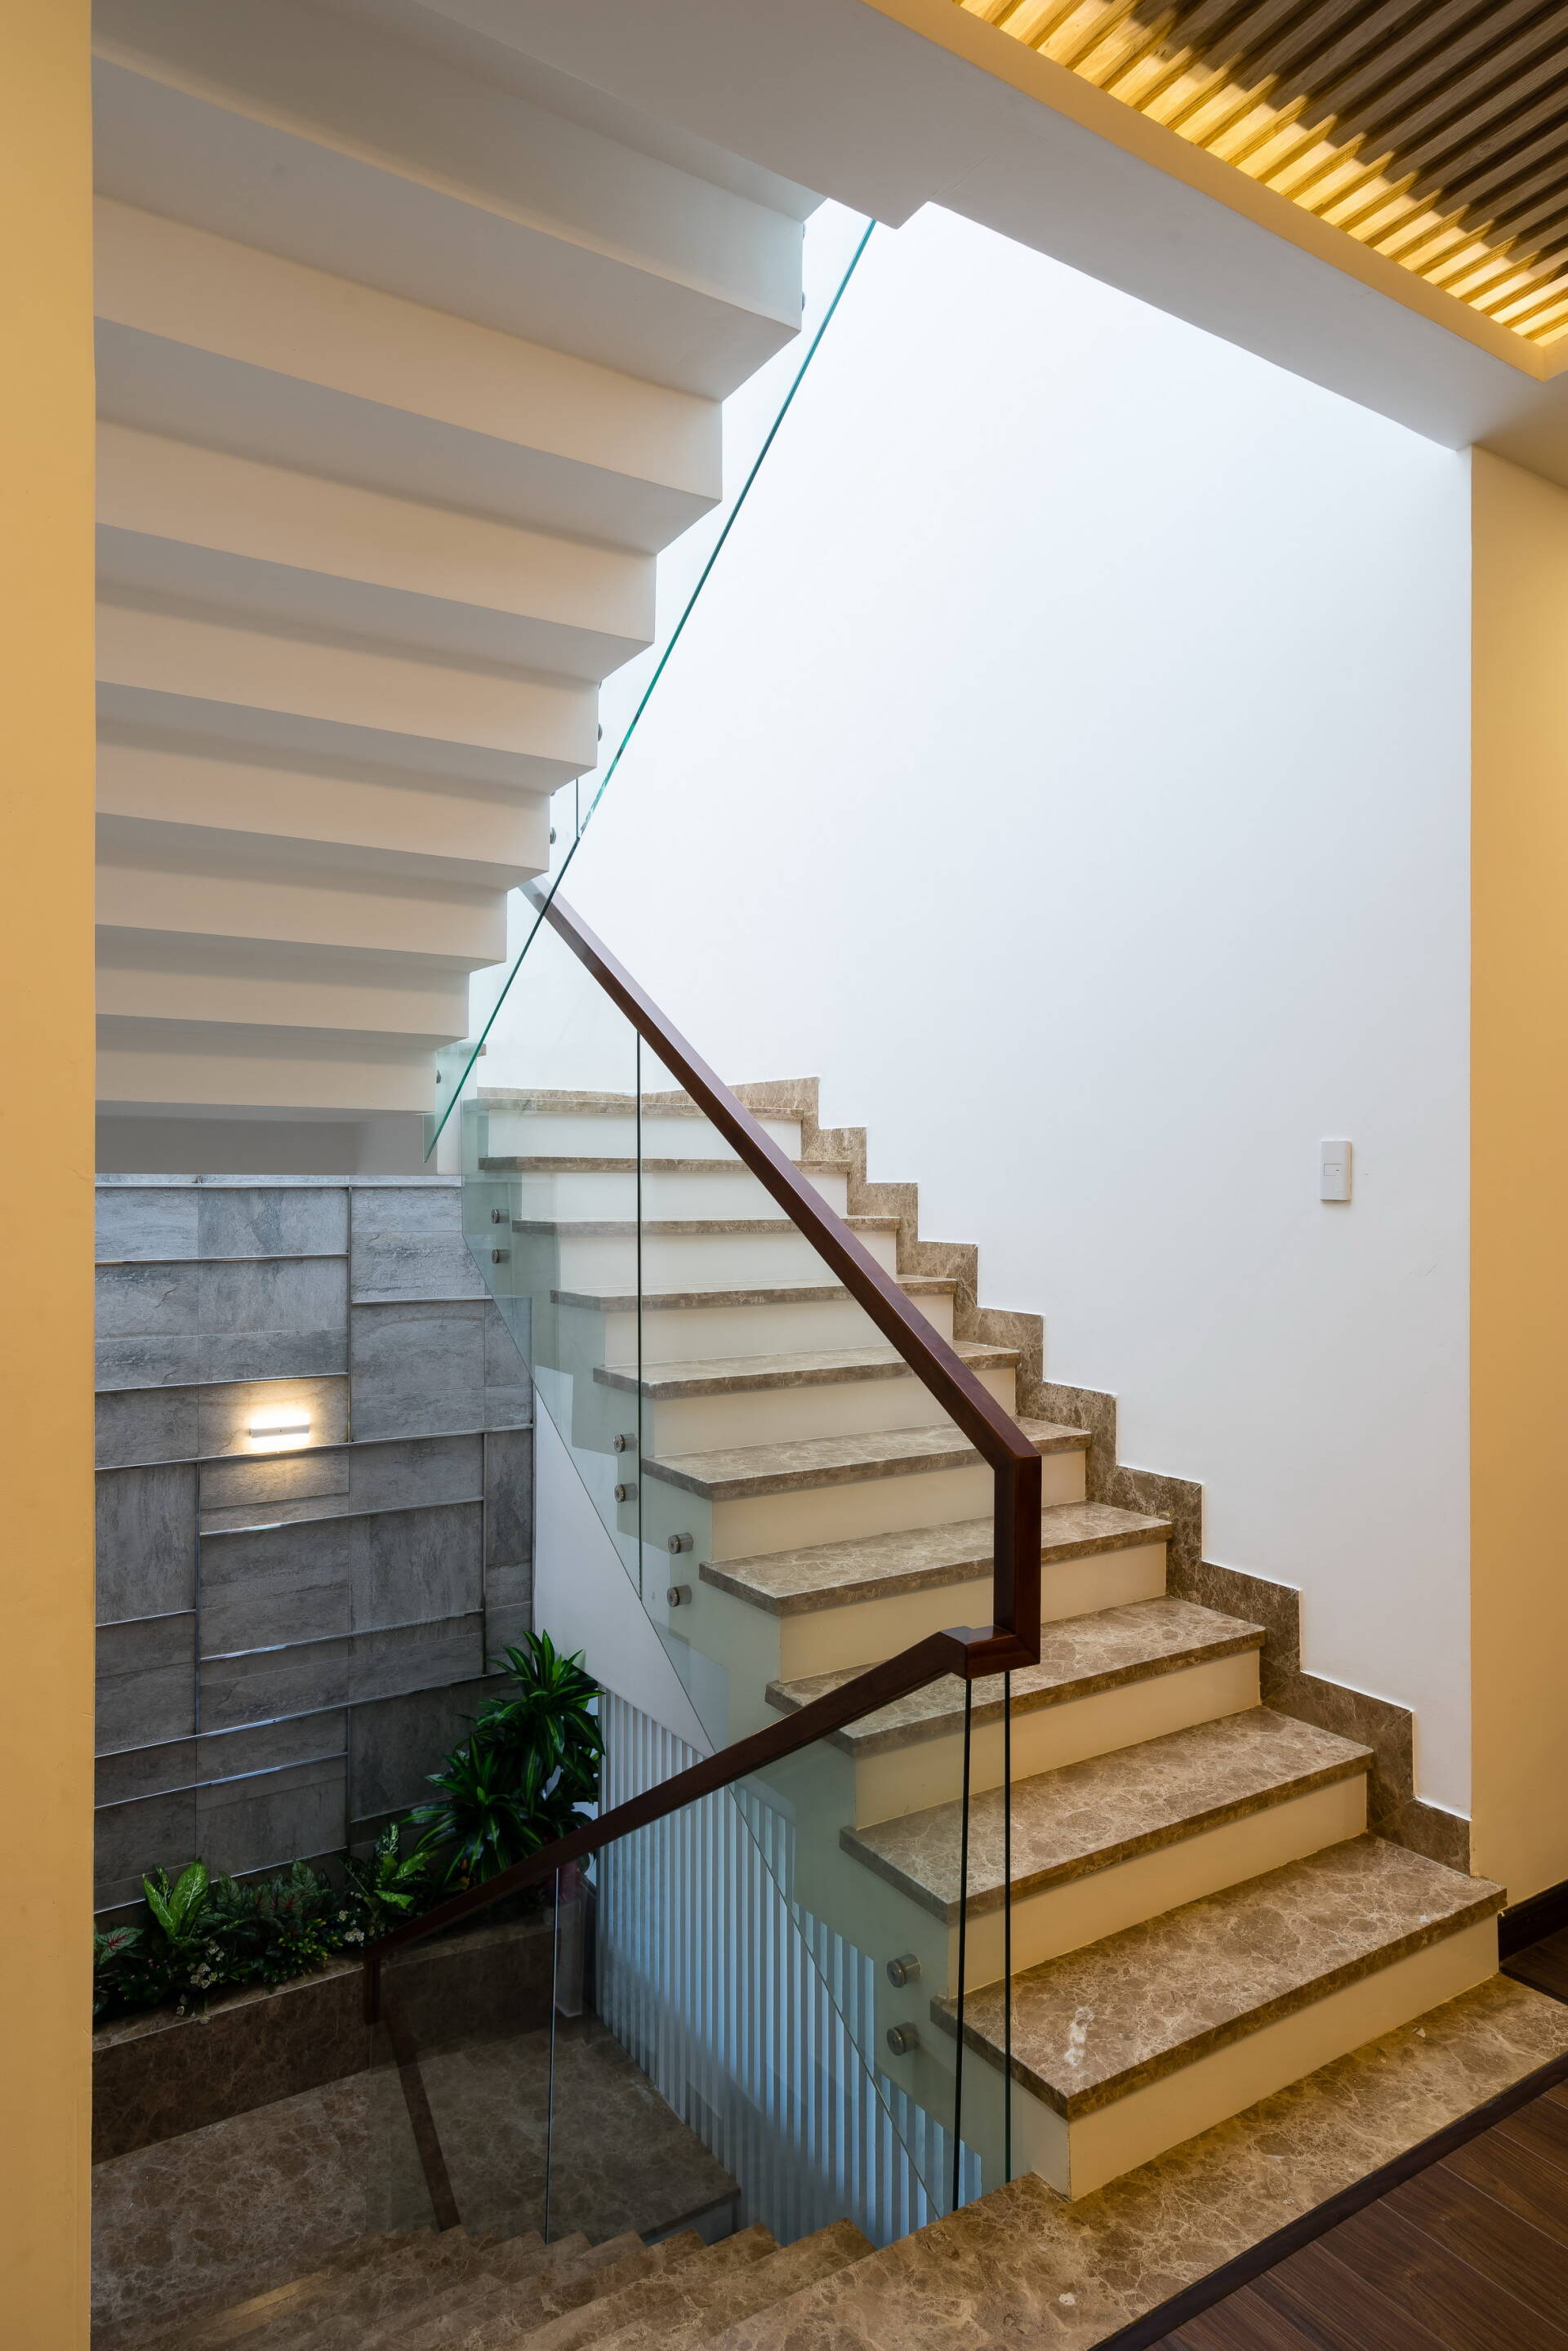  Cầu thang có thiết kế nhẹ nhàng kết nối các tầng.